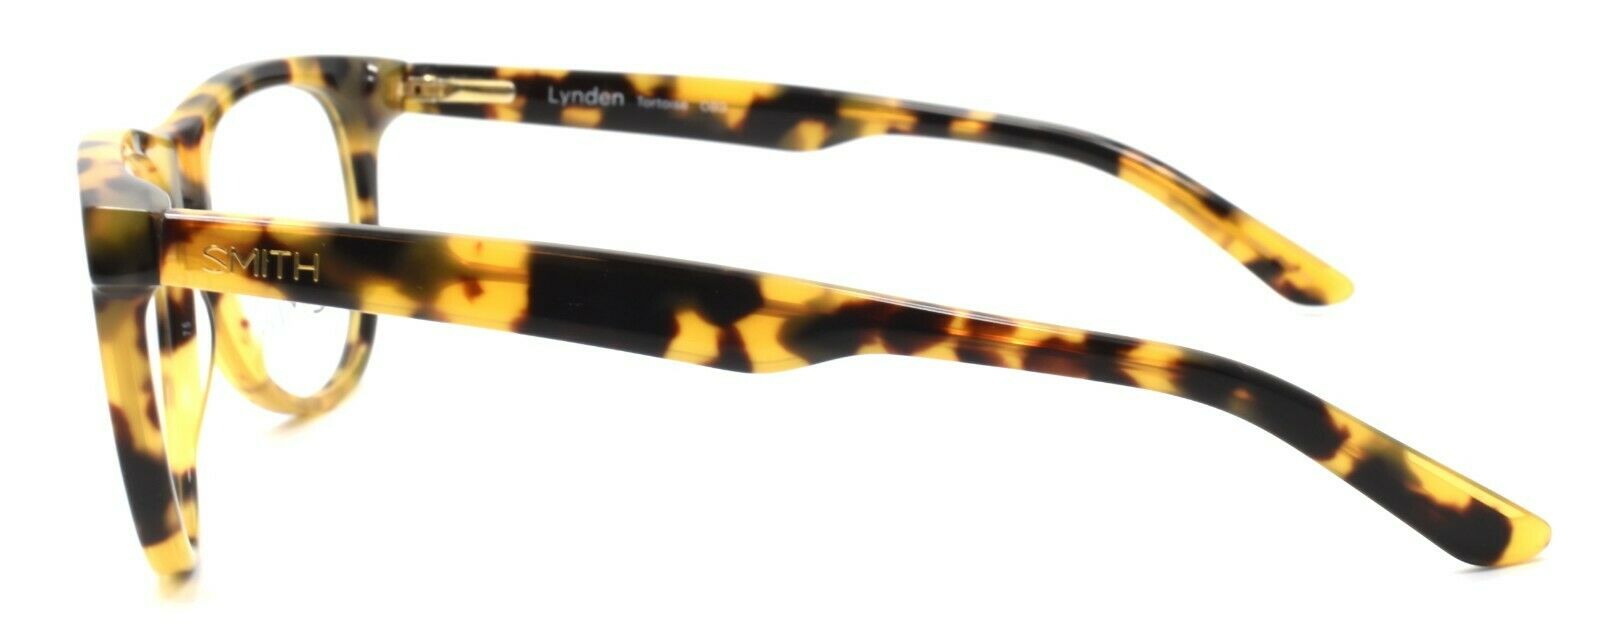 3-SMITH Optics Lynden 0B9 Women's Eyeglasses Frames 49-17-135 Tortoise + CASE-762753230928-IKSpecs